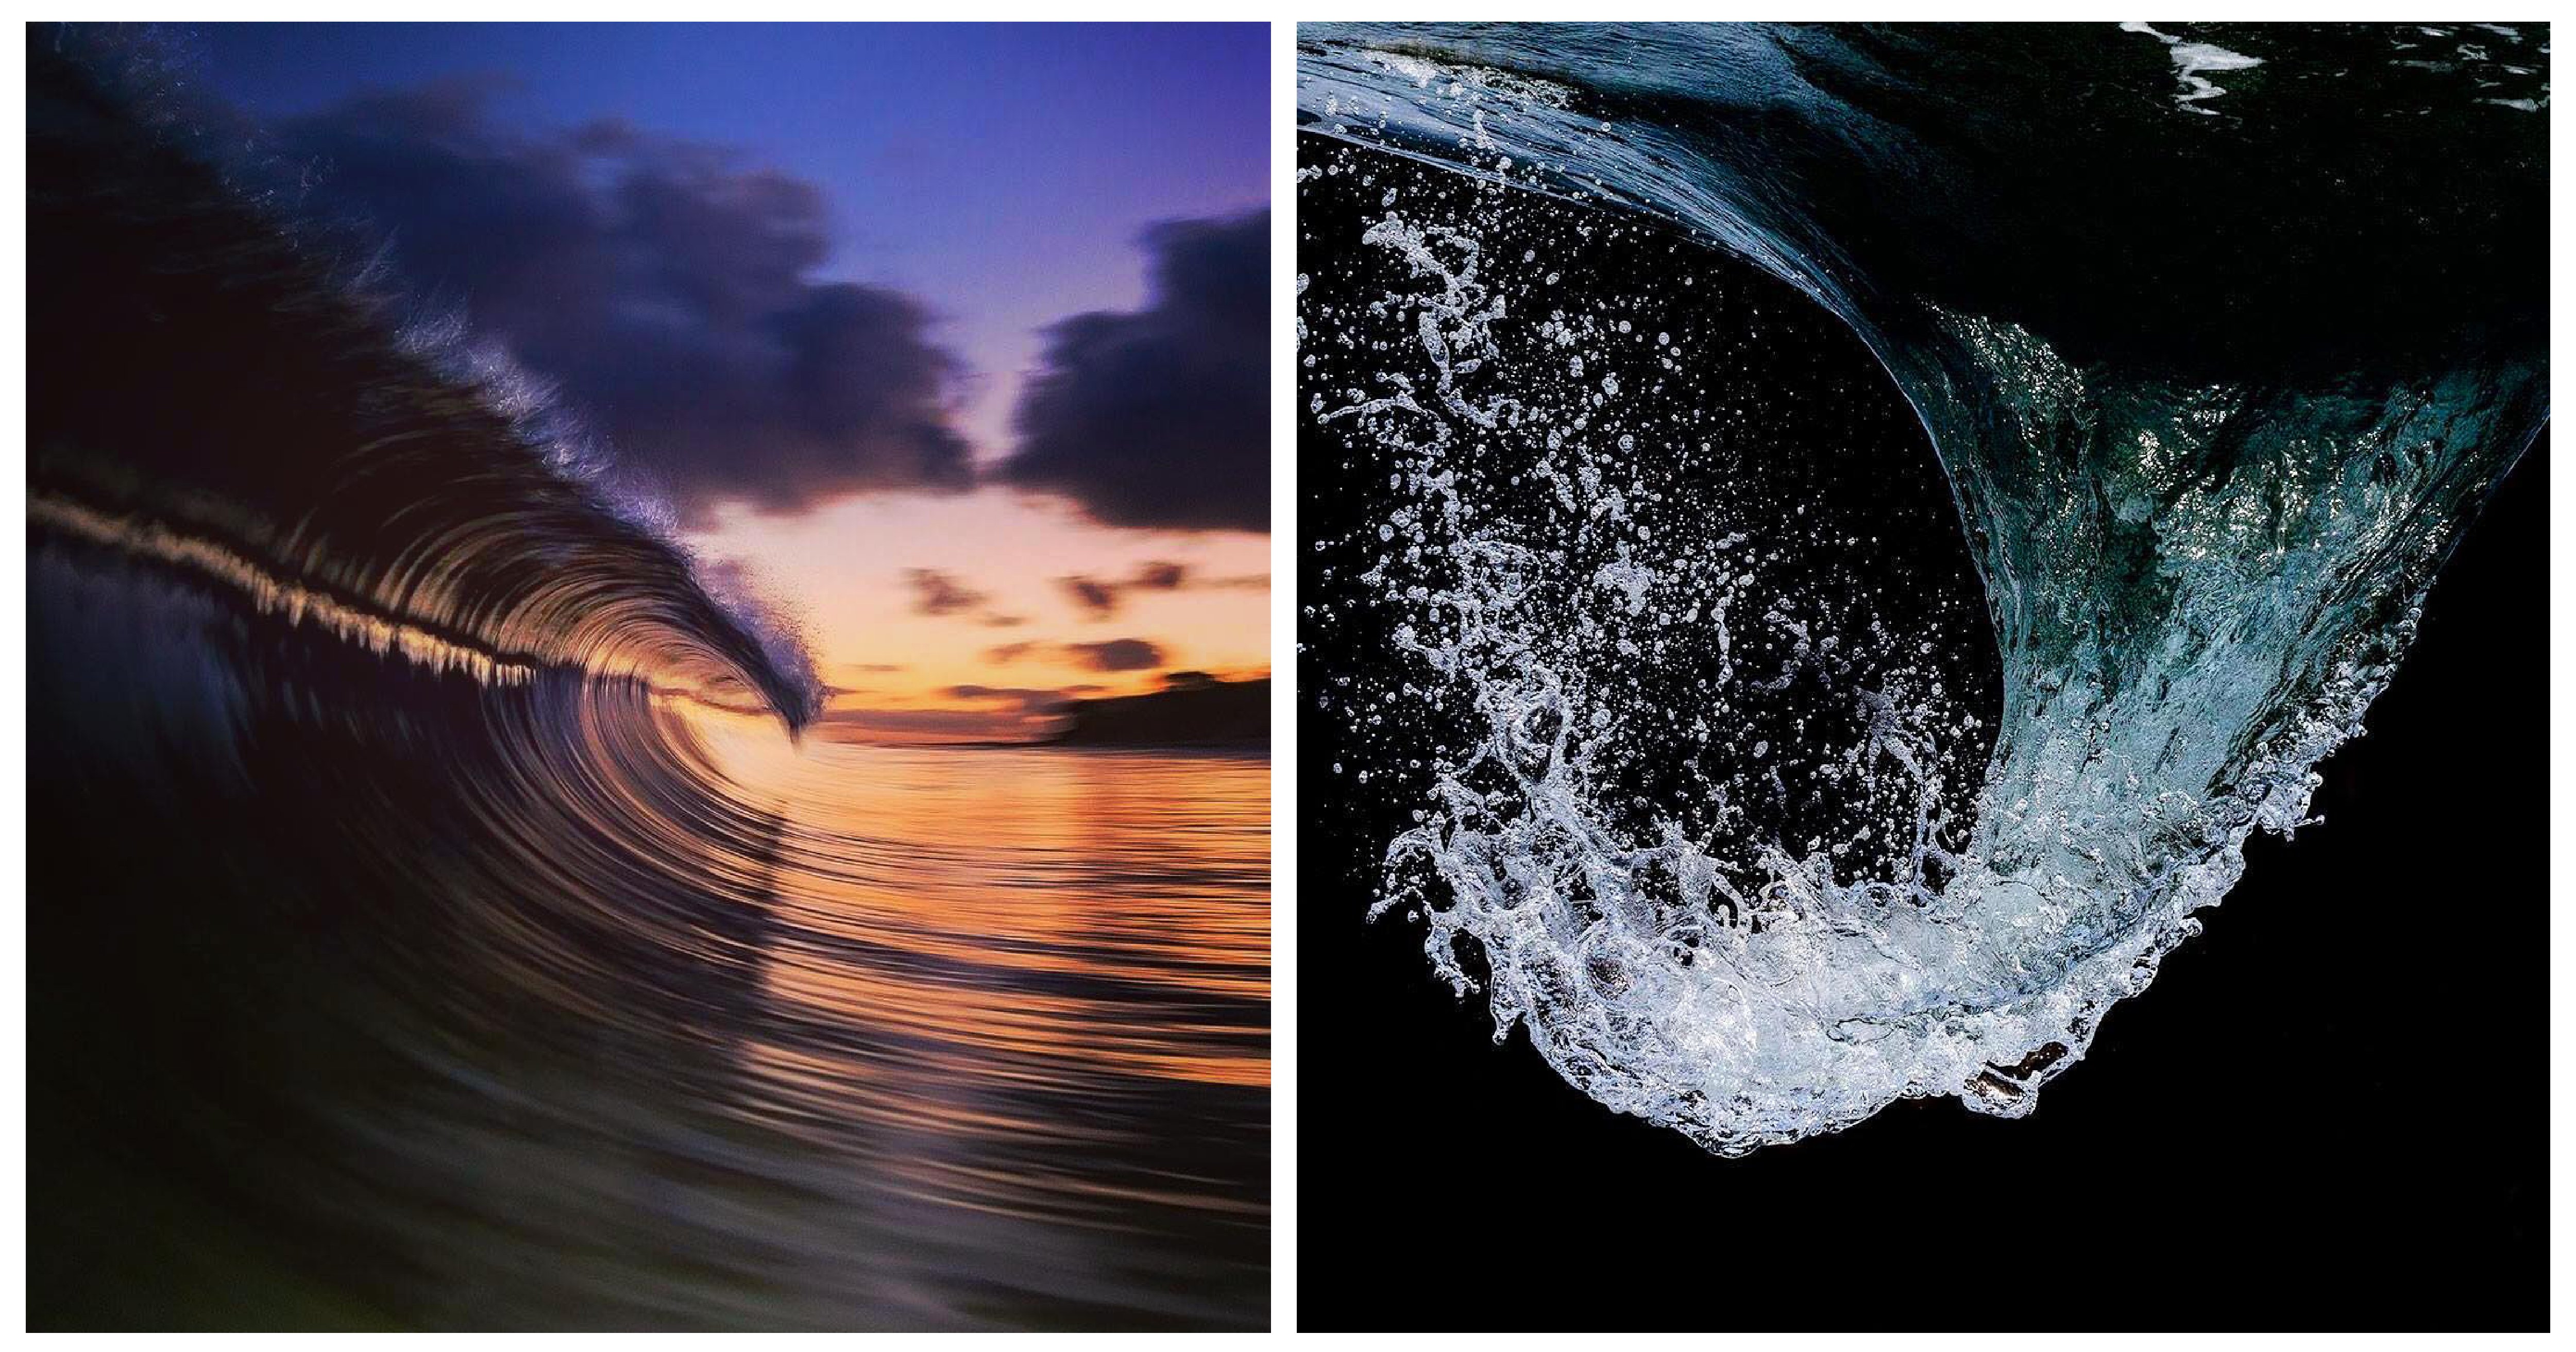 e5b081e99da2 e5b7a5e4bd9ce58d80e59f9f 1 5.png?resize=412,275 - 10張絕美海浪攝影照！攝影師超會捕捉海浪的風情萬種，網友驚呆：「美到好不真實」